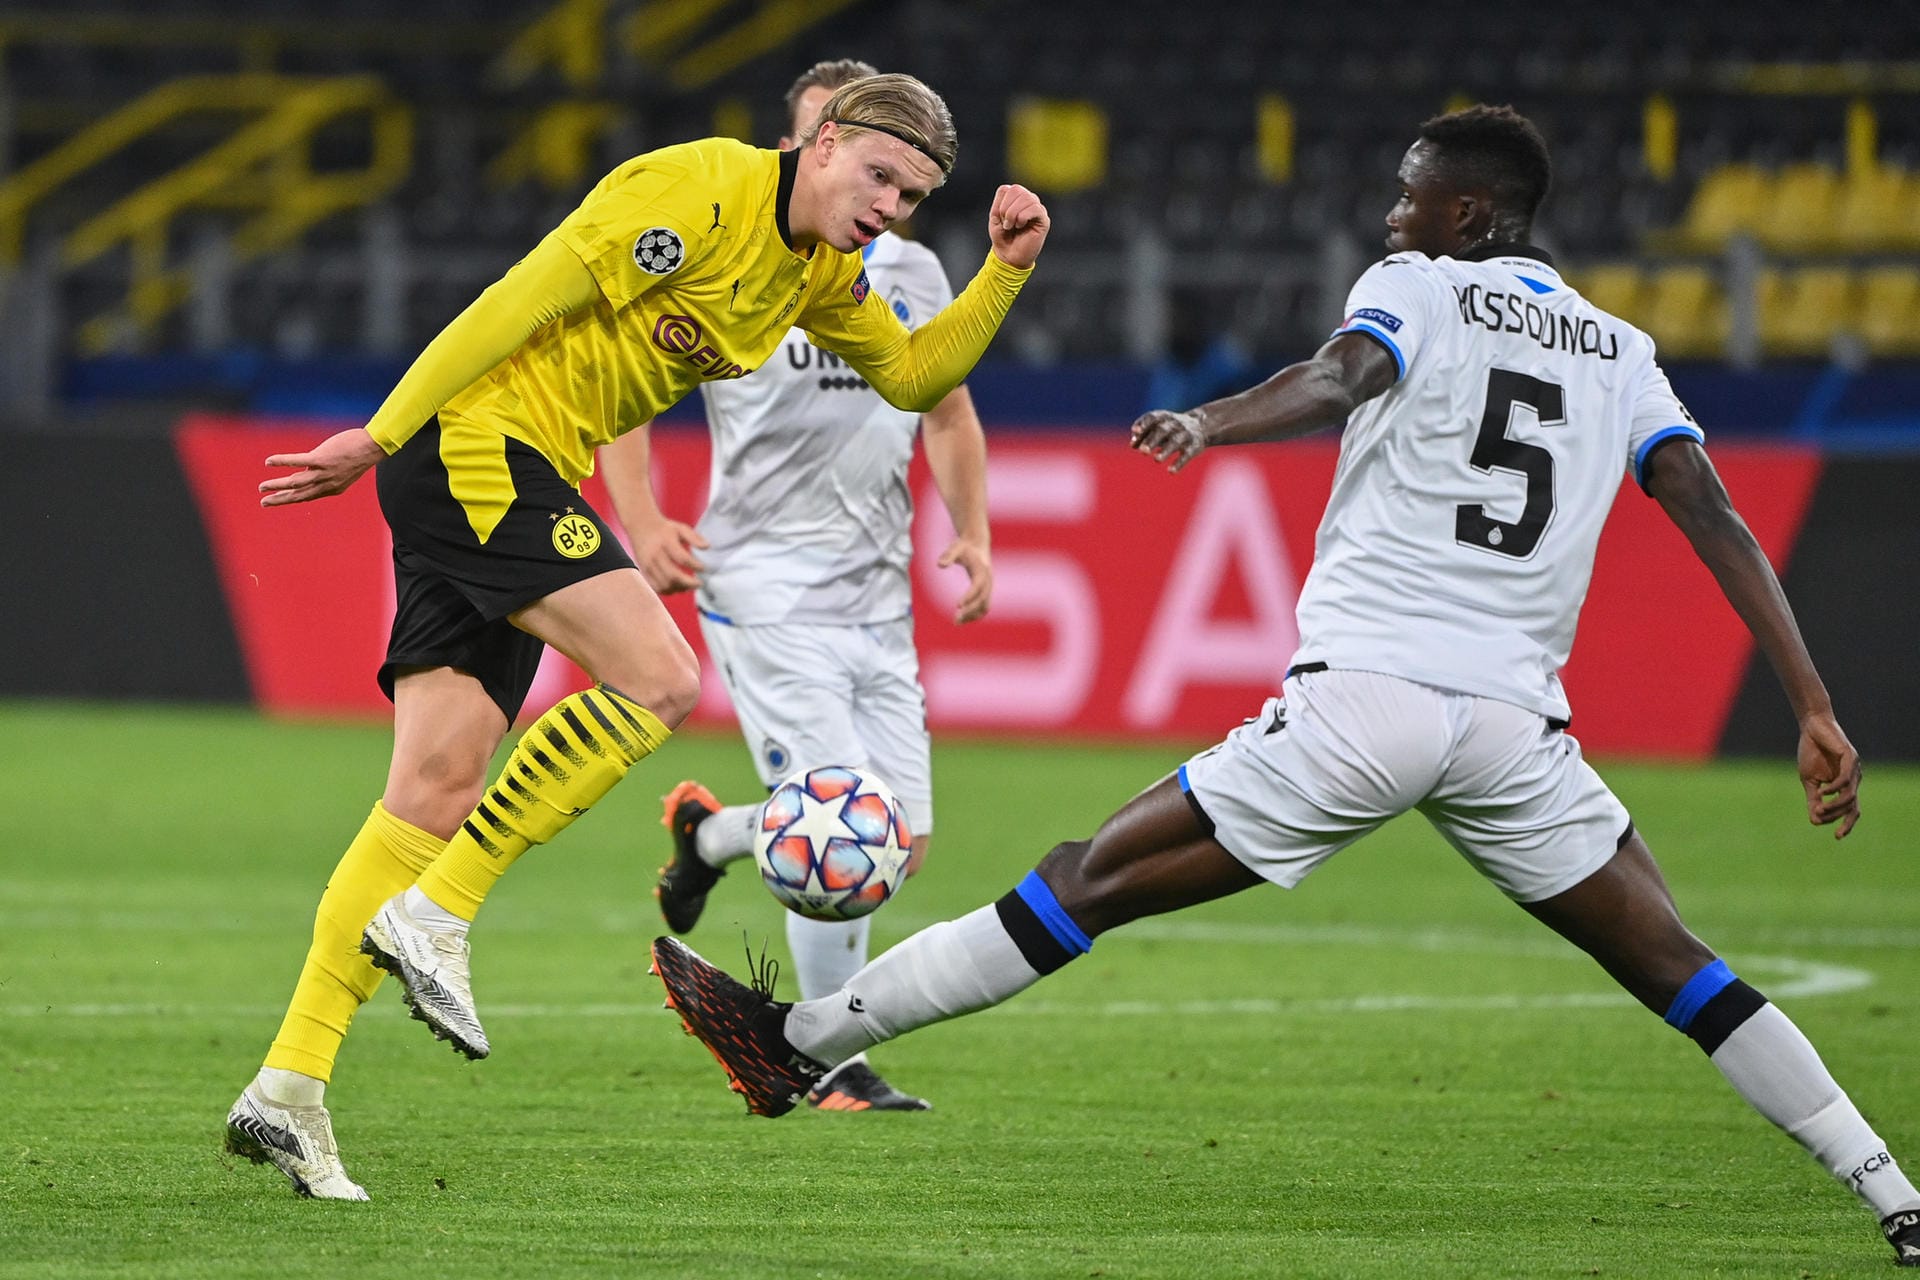 Borussia Dortmund steht kurz vor dem Einzug ins Champions-League-Achtelfinale. Gegen den FC Brügge gewann der BVB dank einer sehr erwachsenen Leistung mit 3:0 und führt Gruppe F damit an. Dabei überzeugten besonders zwei Youngster. Die BVB-Stars in der t-online-Einzelkritik.